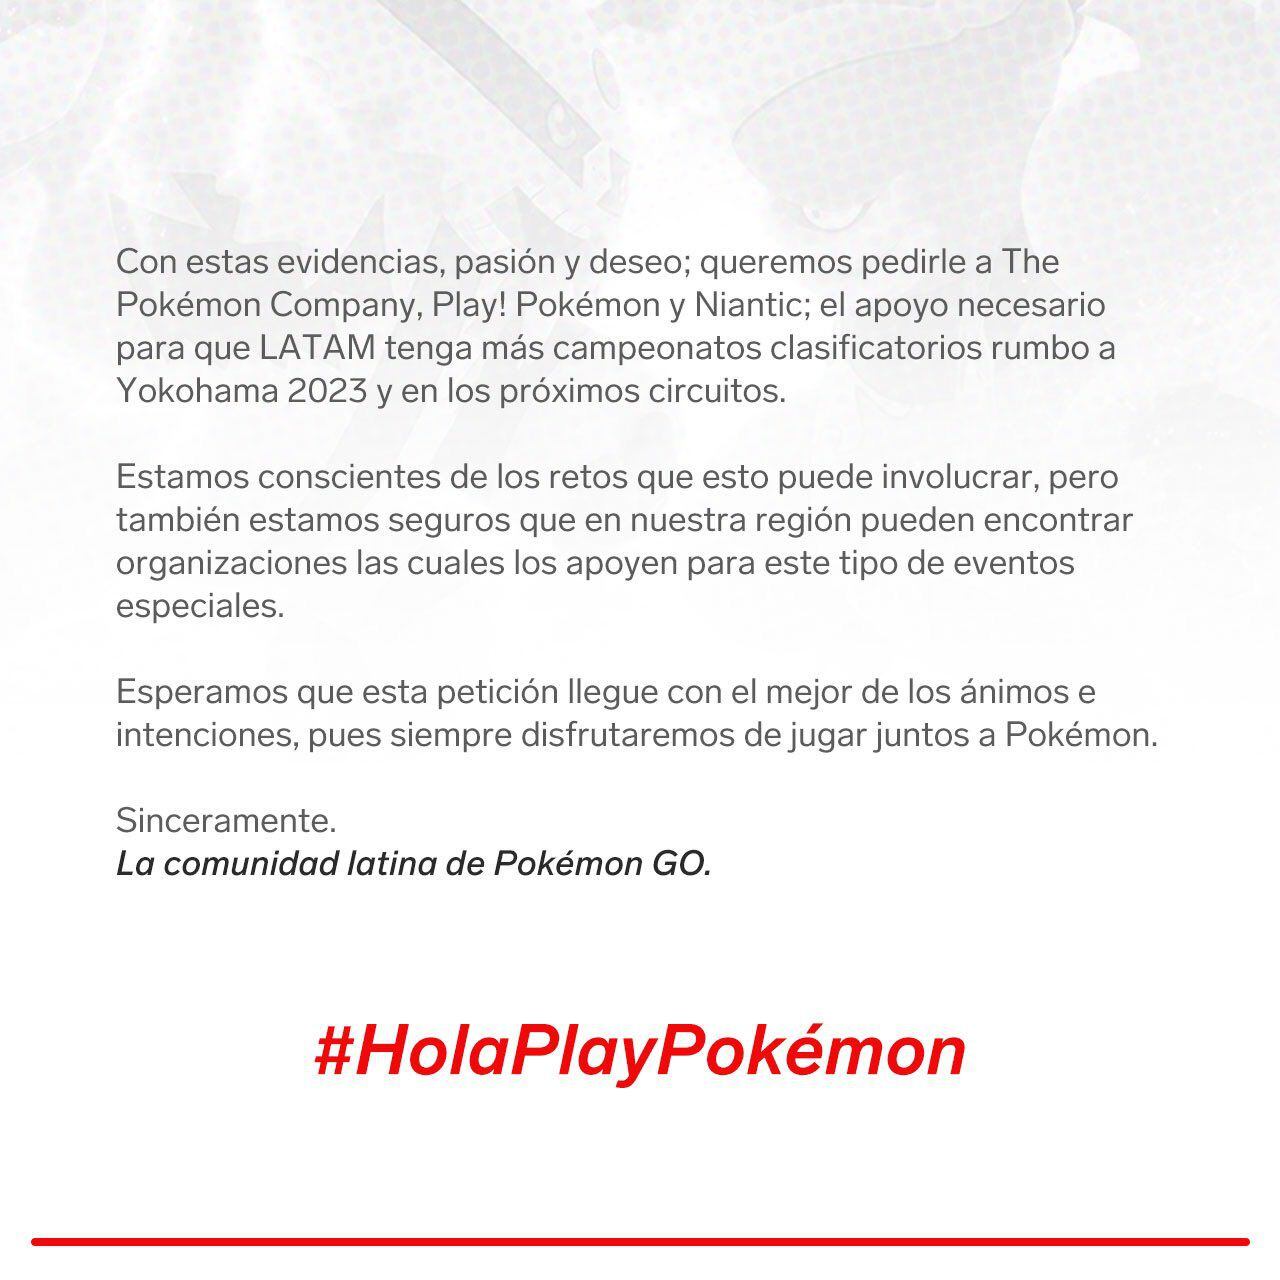 Fans de Latinoamérica de Pokémon Go piden más apoyo